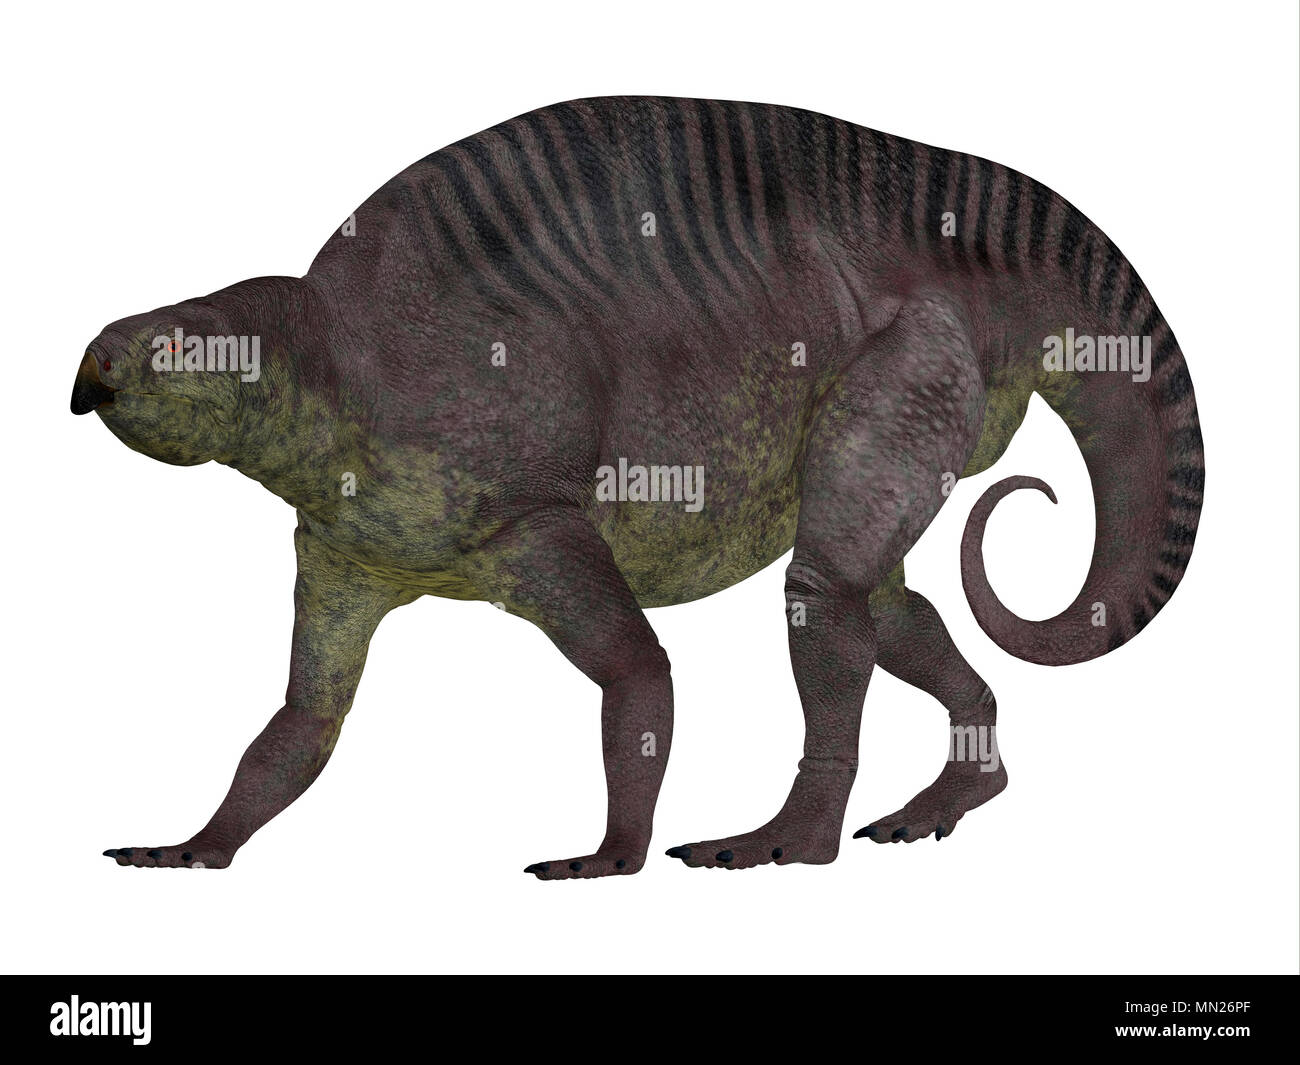 Dinosauro Lotosaurus profilo laterale - Lotosaurus adentis era un erbivoro poposauroid dinosauro che ha vissuto in Cina durante il periodo Triassico. Foto Stock